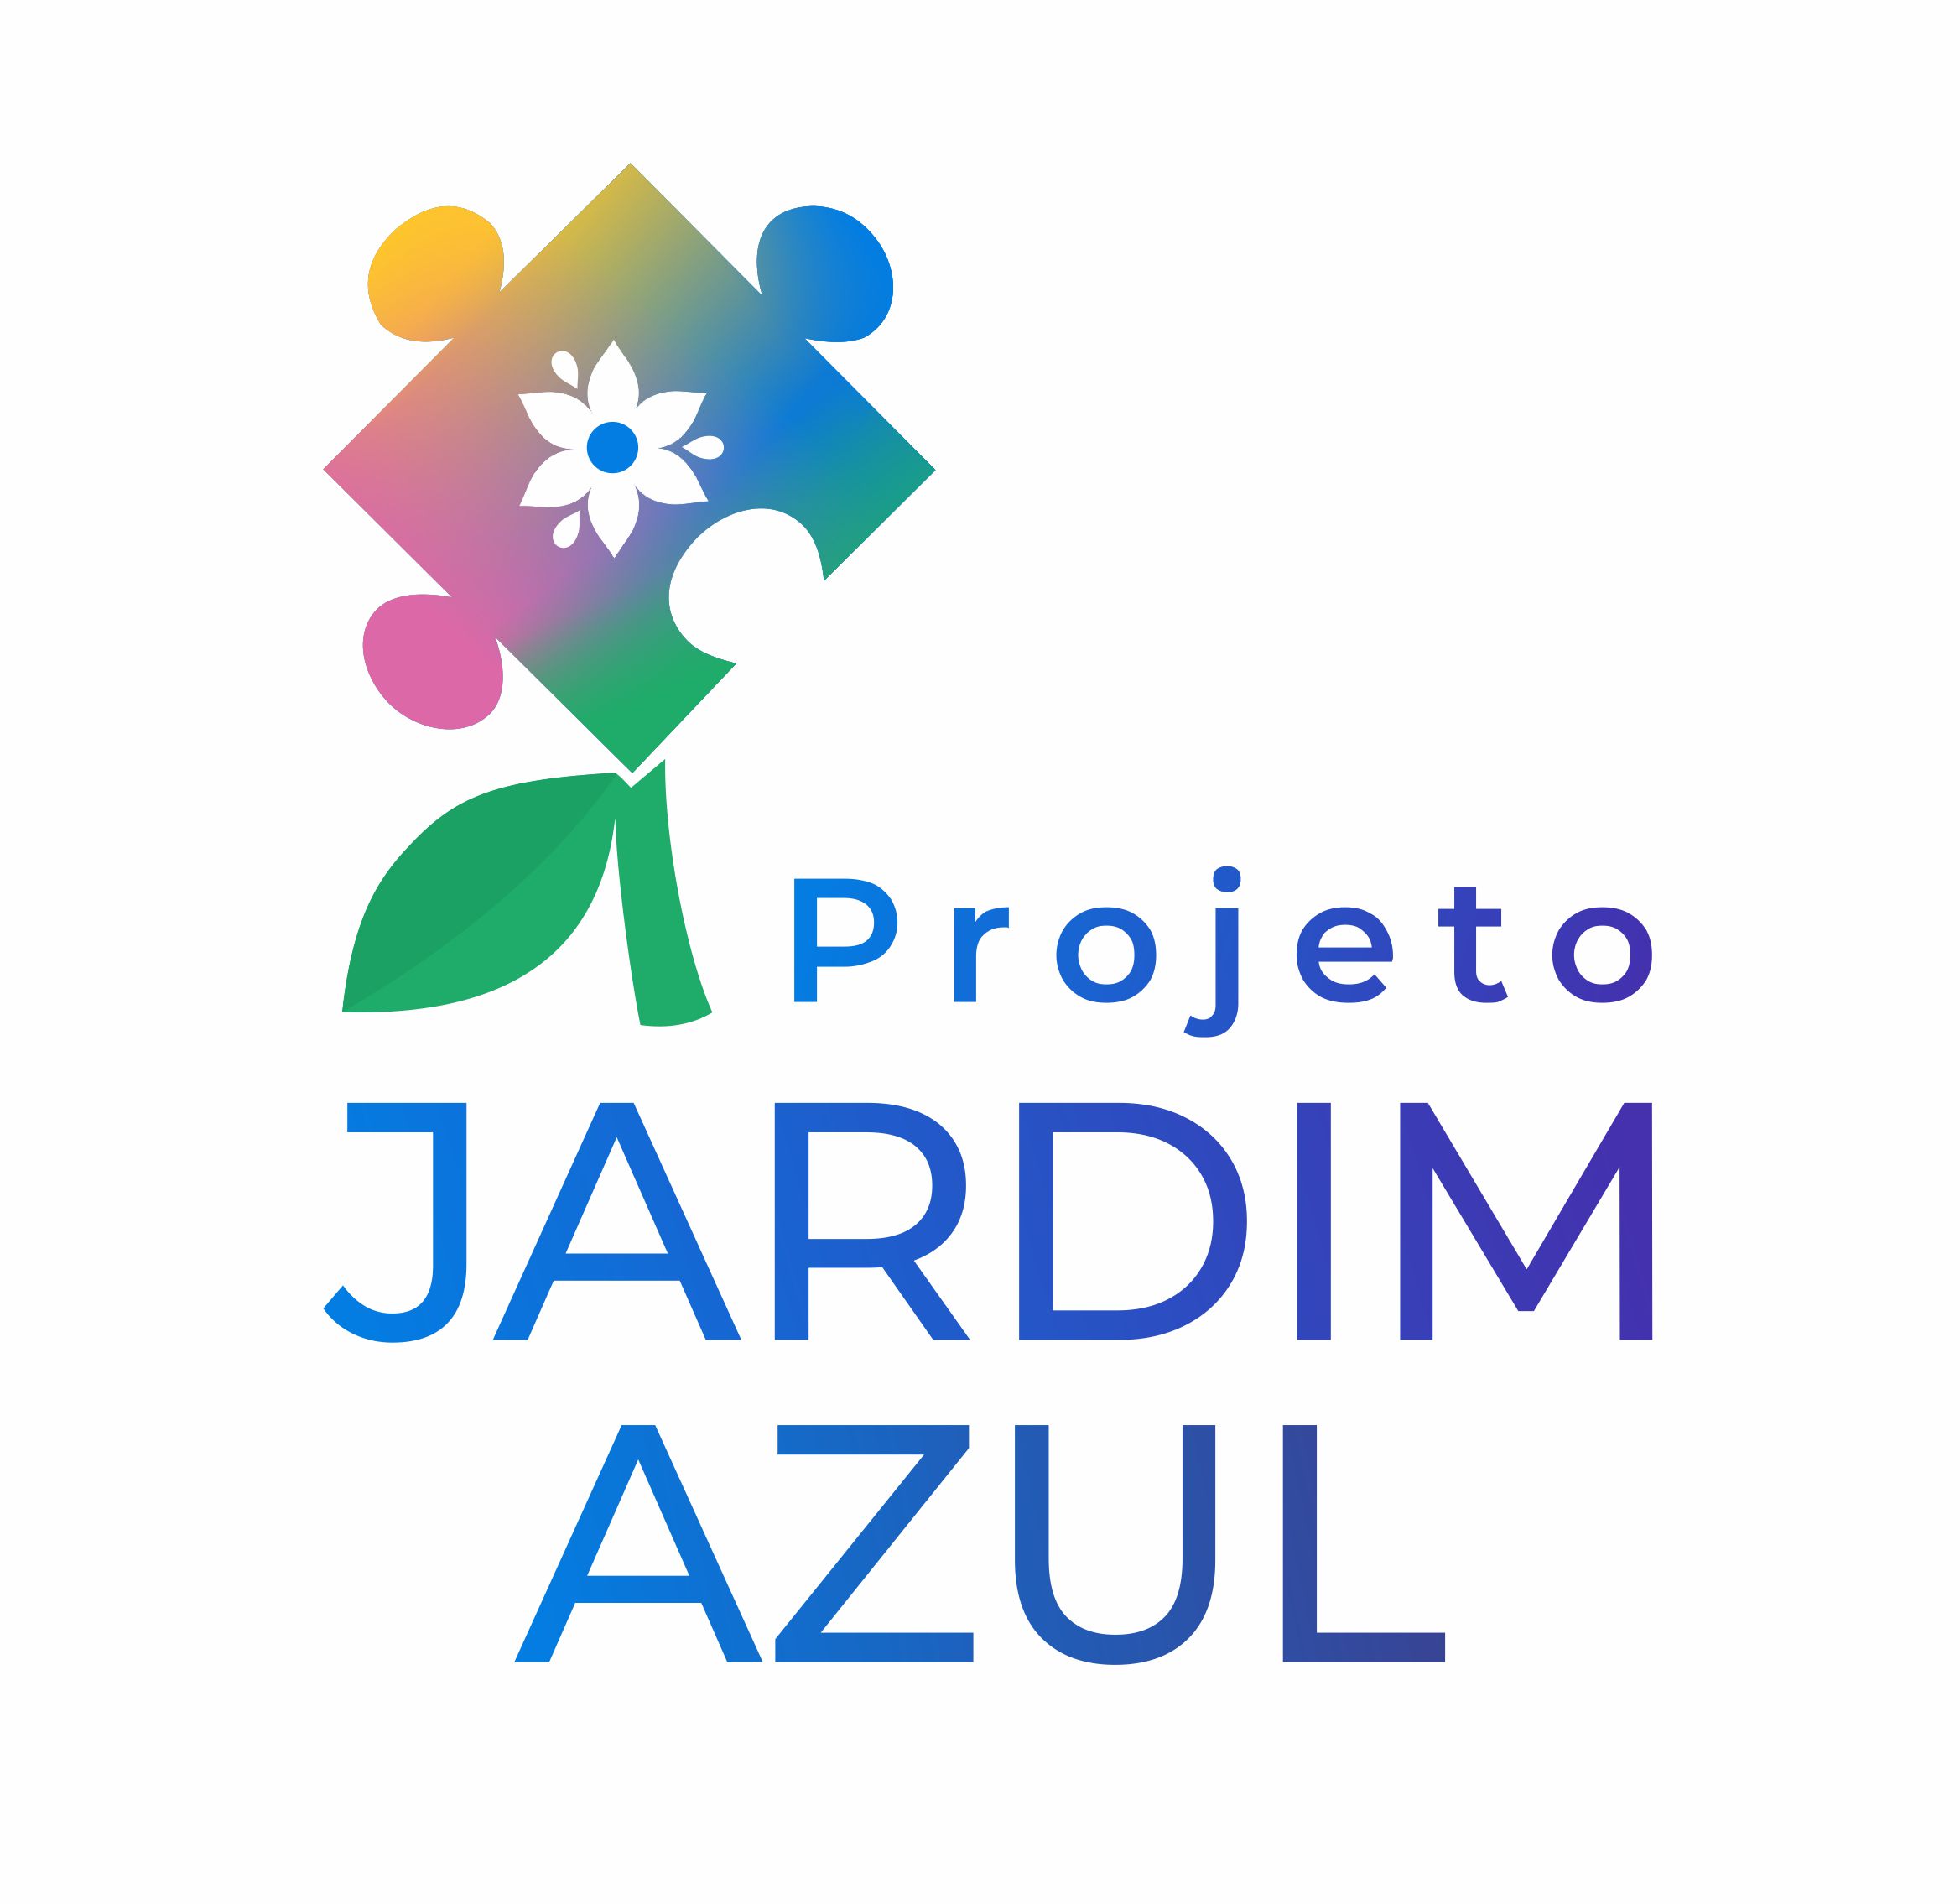 Projeto Jardim Azul